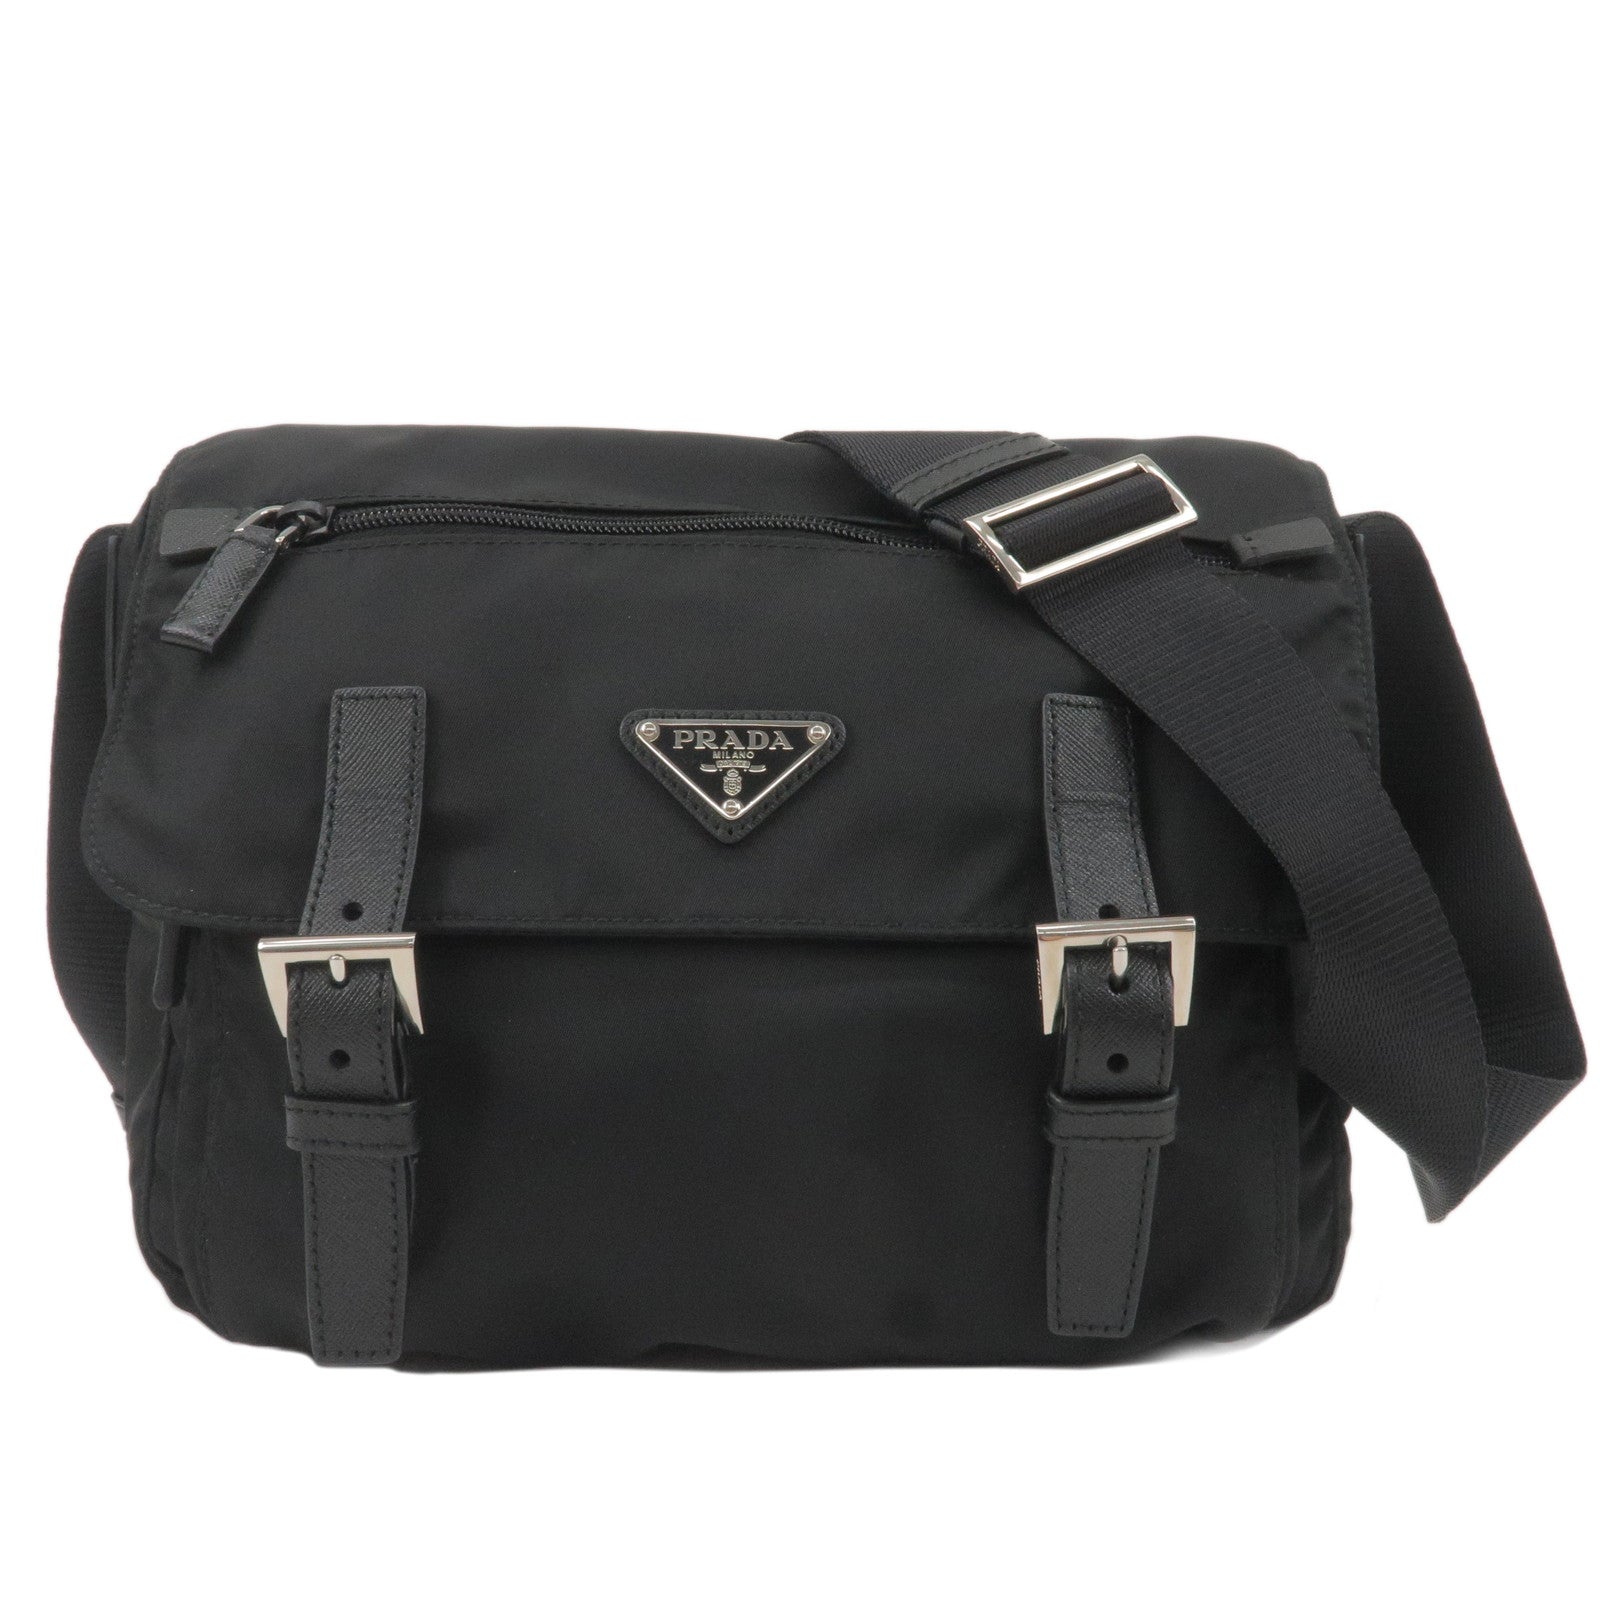 PRADA-Logo-Nylon-Leather-Crossbody-Shoulder-Bag-NERO-Black